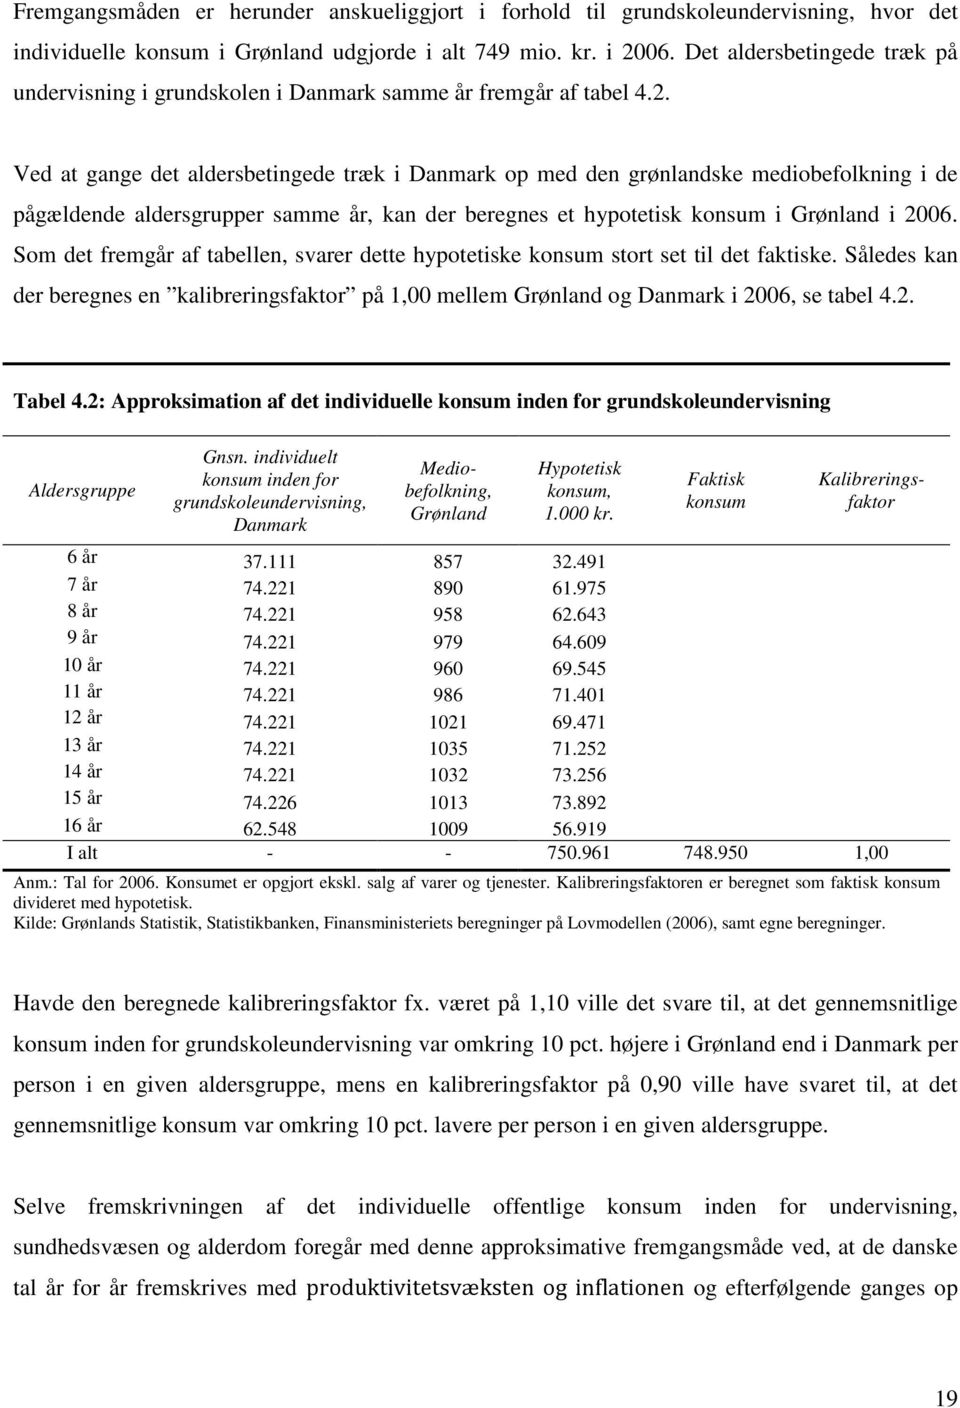 Ved a gange de aldersbeingede ræk i Danmark op med den grønlandske mediobefolkning i de pågældende aldersgrupper samme år, kan der beregnes e hypoeisk konsum i Grønland i 26.